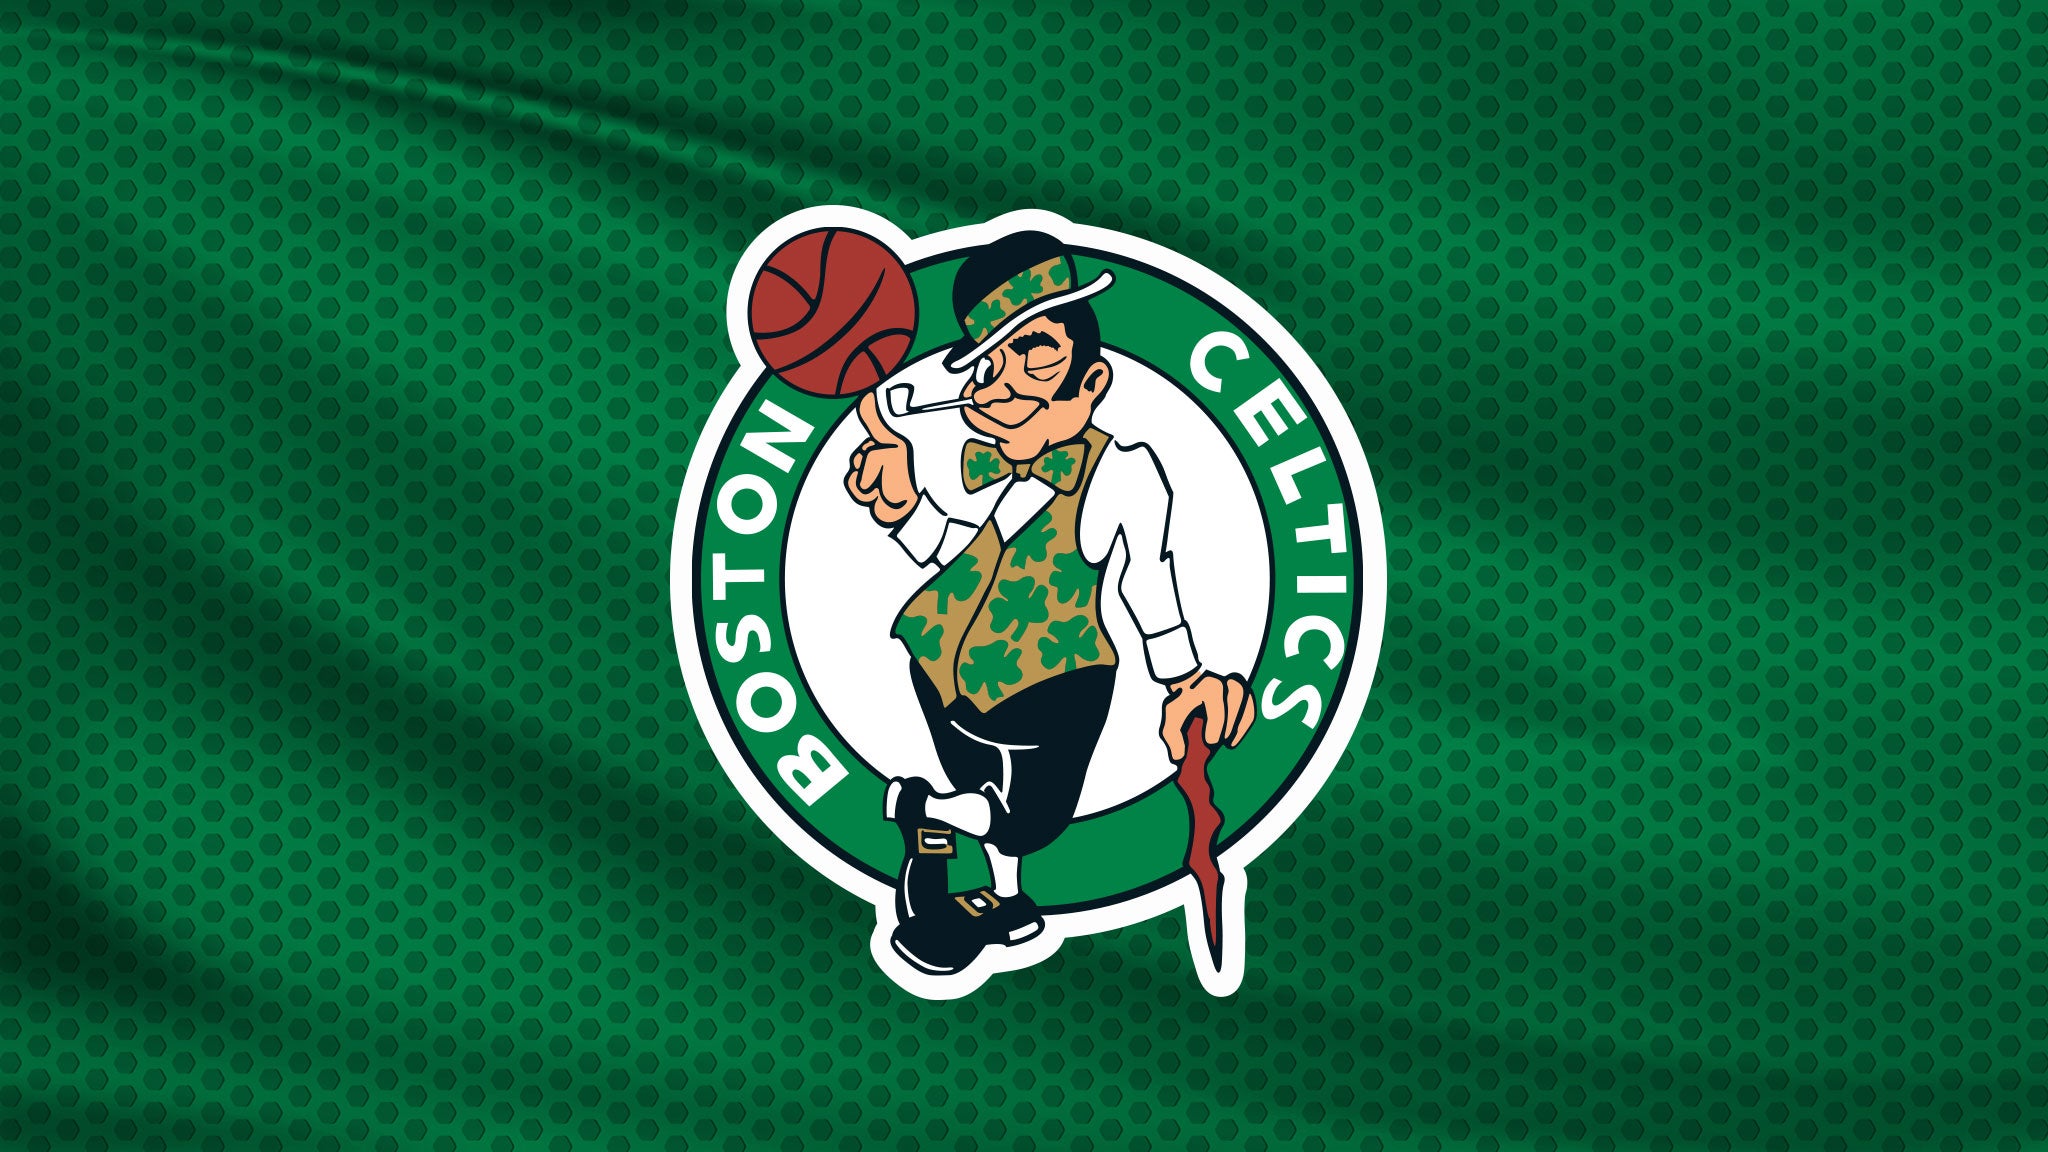 NBA Finals: TBD at Celtics Rd 4 Hm Gm 3